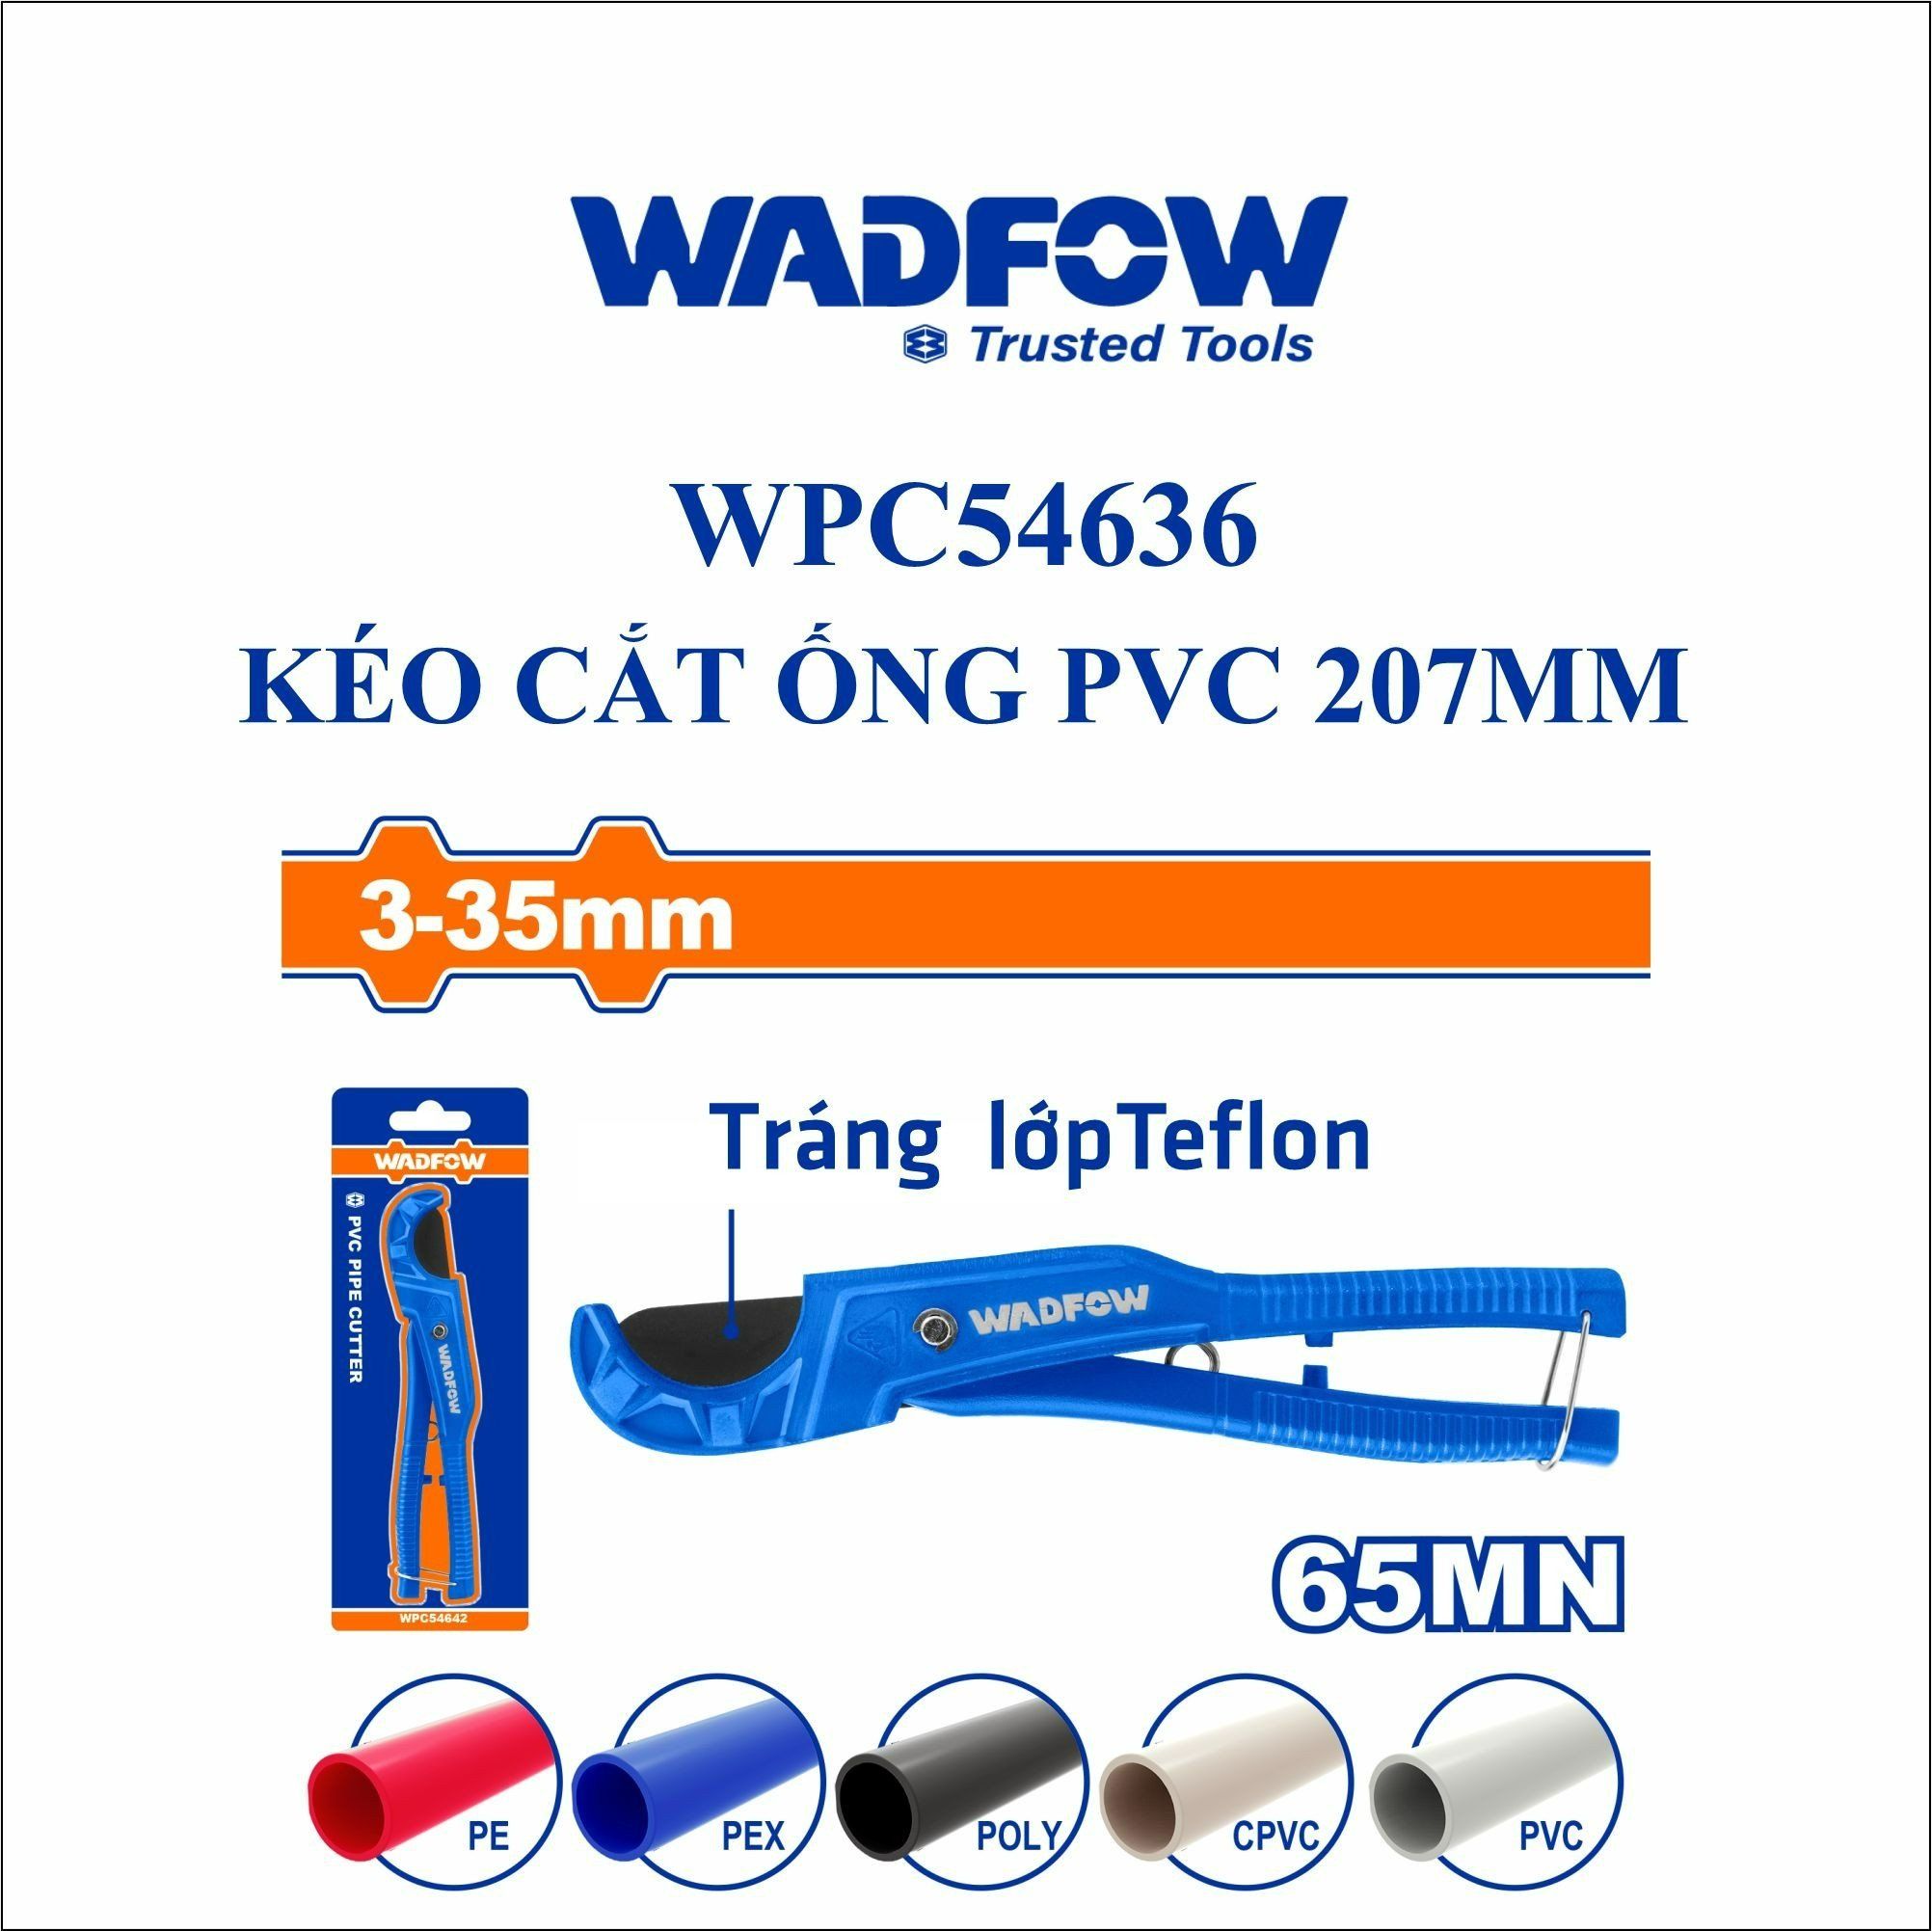  Kéo cắt ống PVC 207mm WADFOW WPC54636 